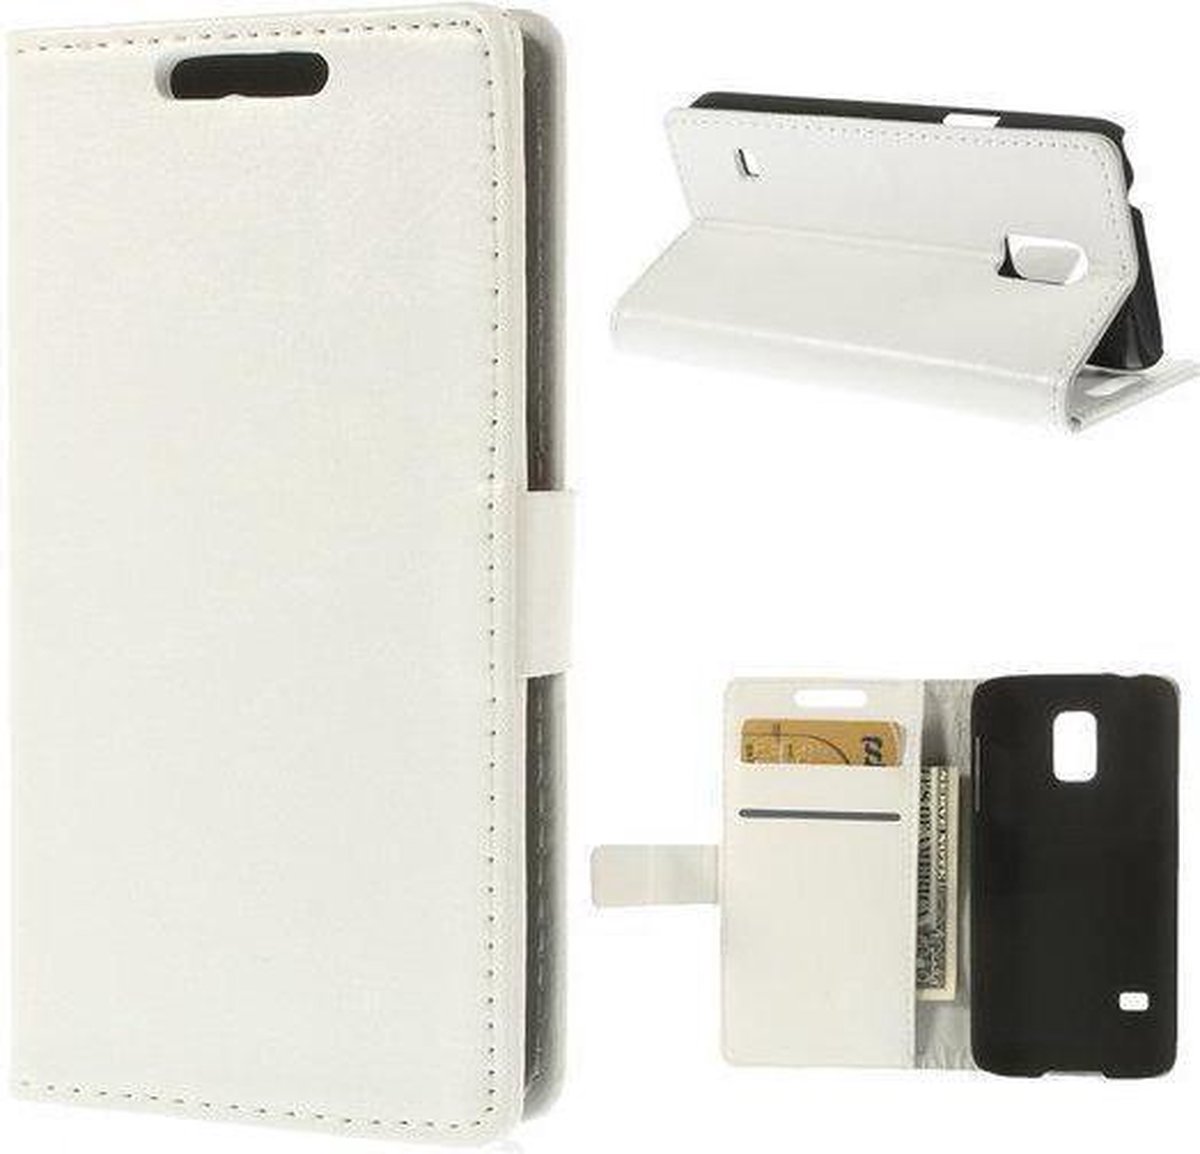 Cyclone wallet case hoesje Samsung Galaxy S5 mini wit